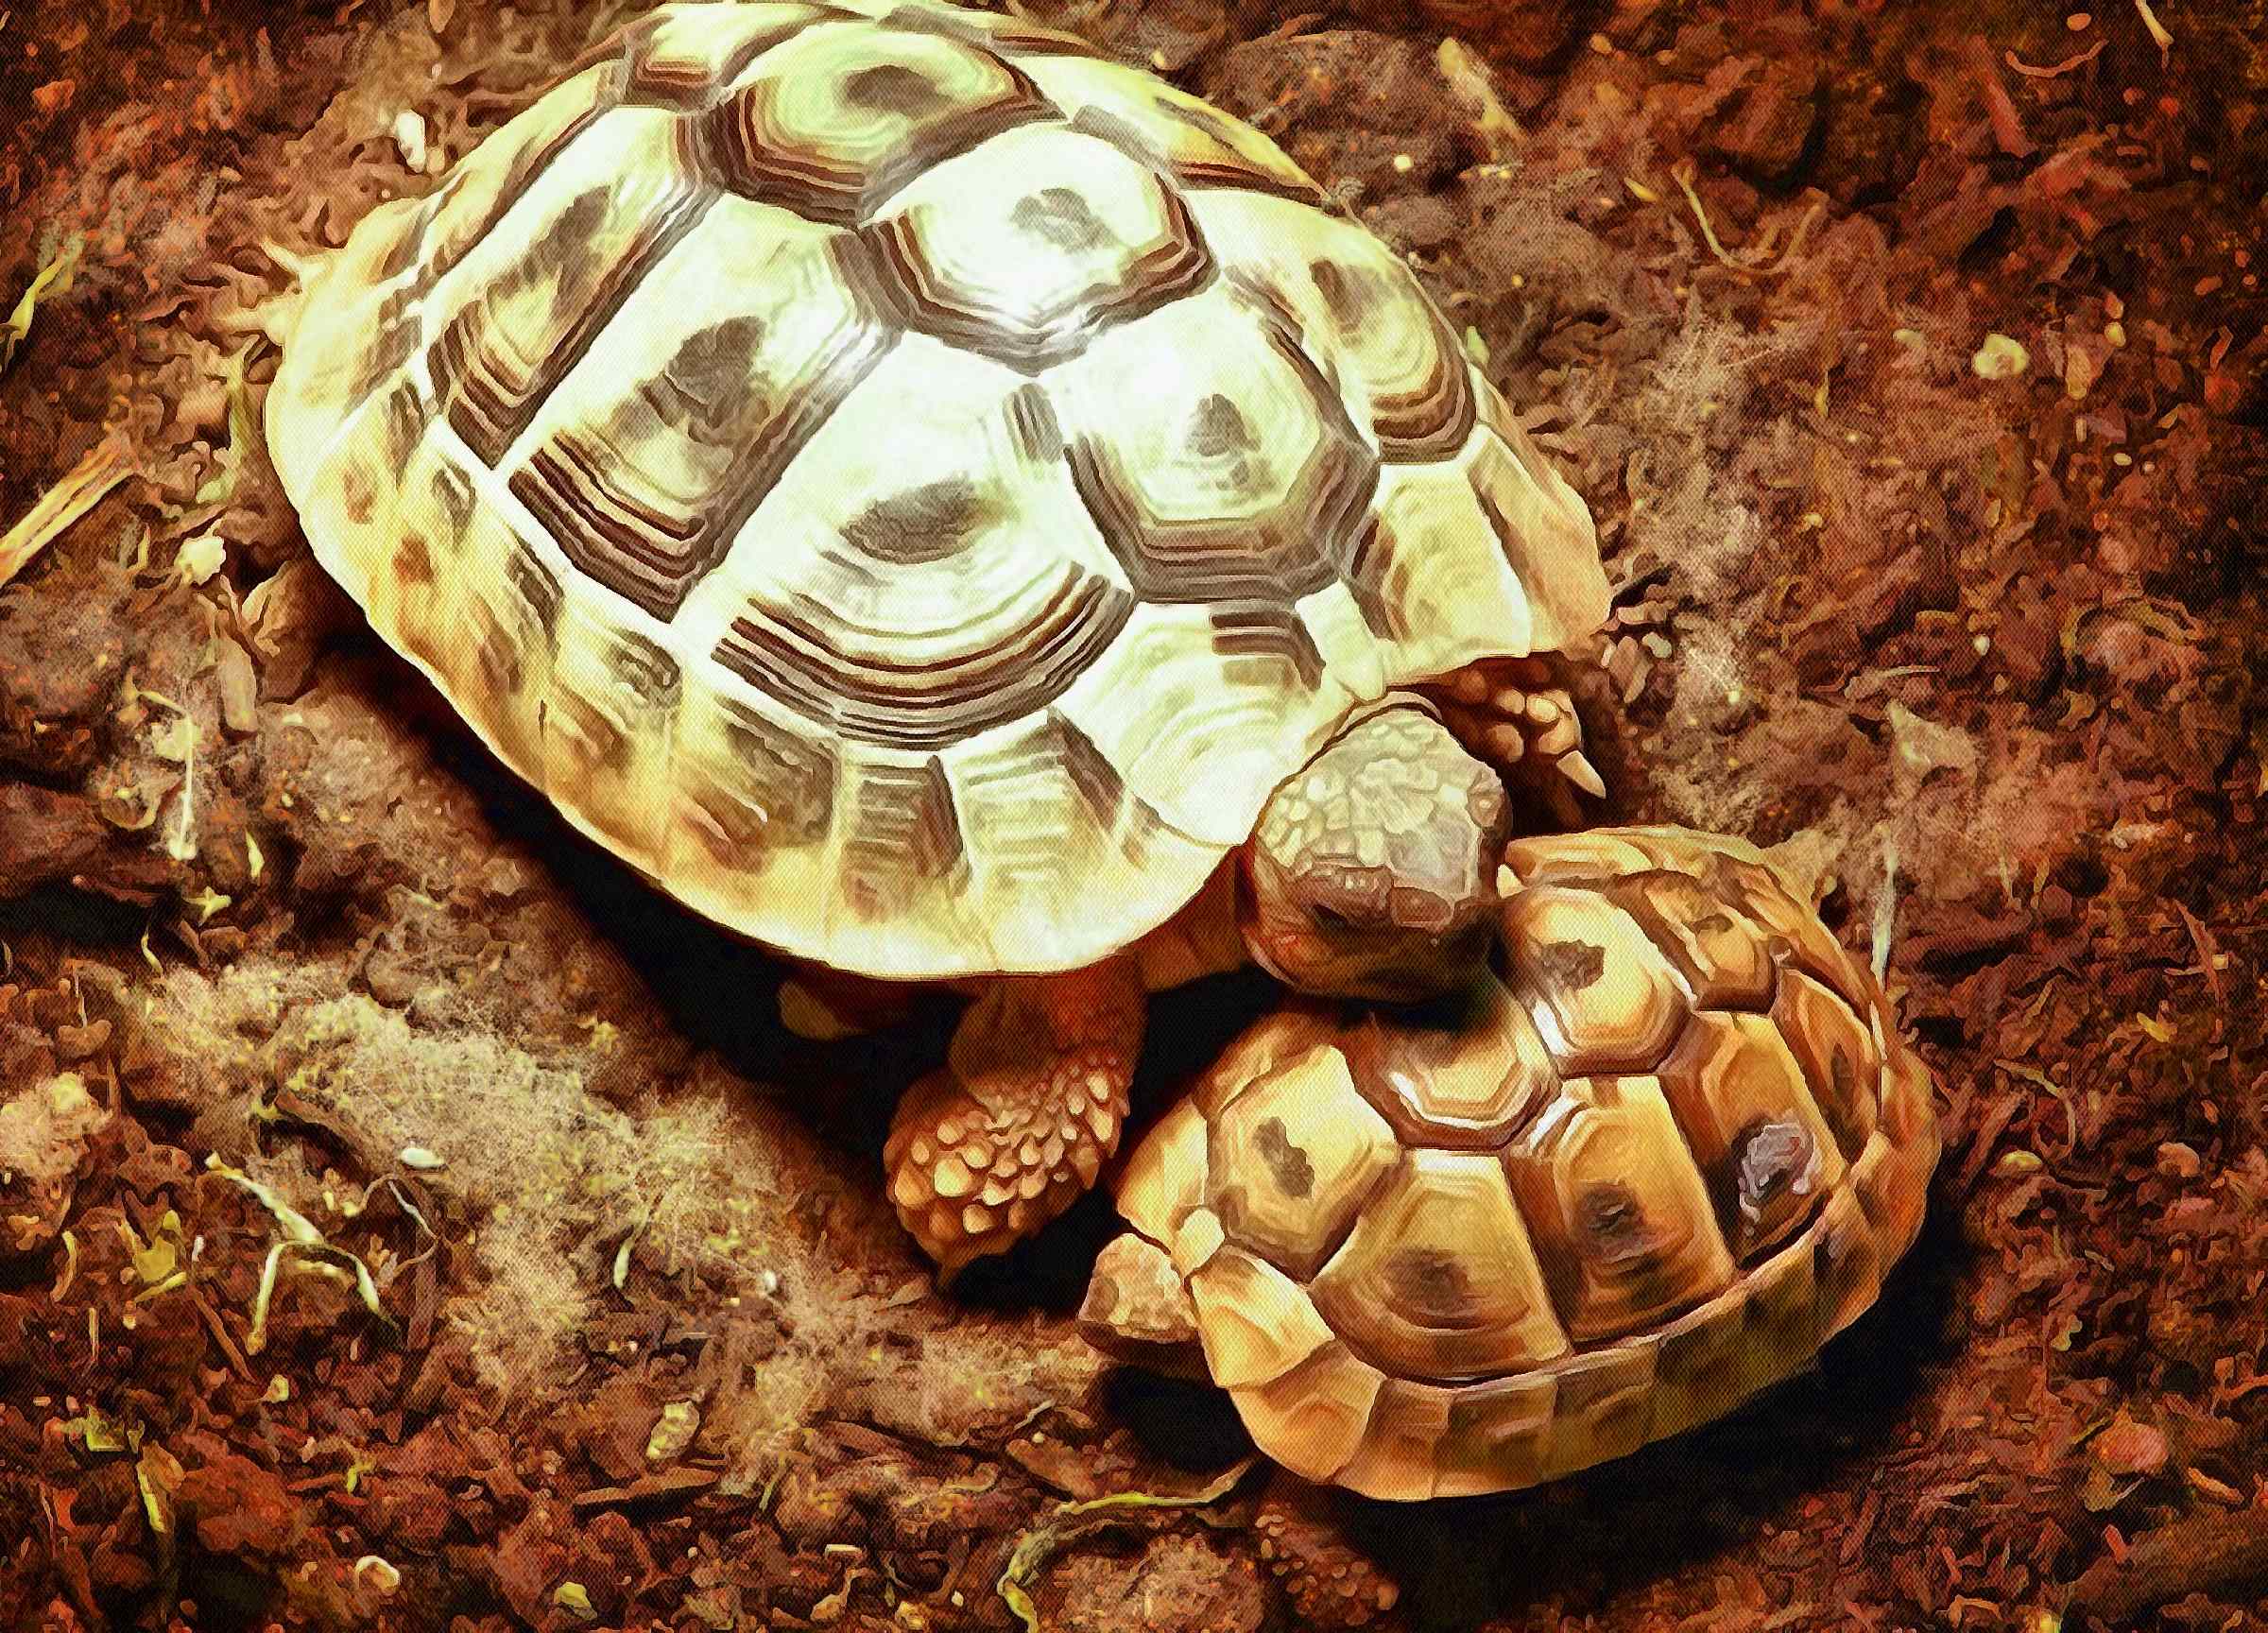 Turtle free images, tortoise free images, chelonian, leatherback, loggerhead, turtle, tortoise – Turtle free images, Tortoise free images, Turtle stock free images, Download free images turtles, turtle public domain images, tortoise public domain images!